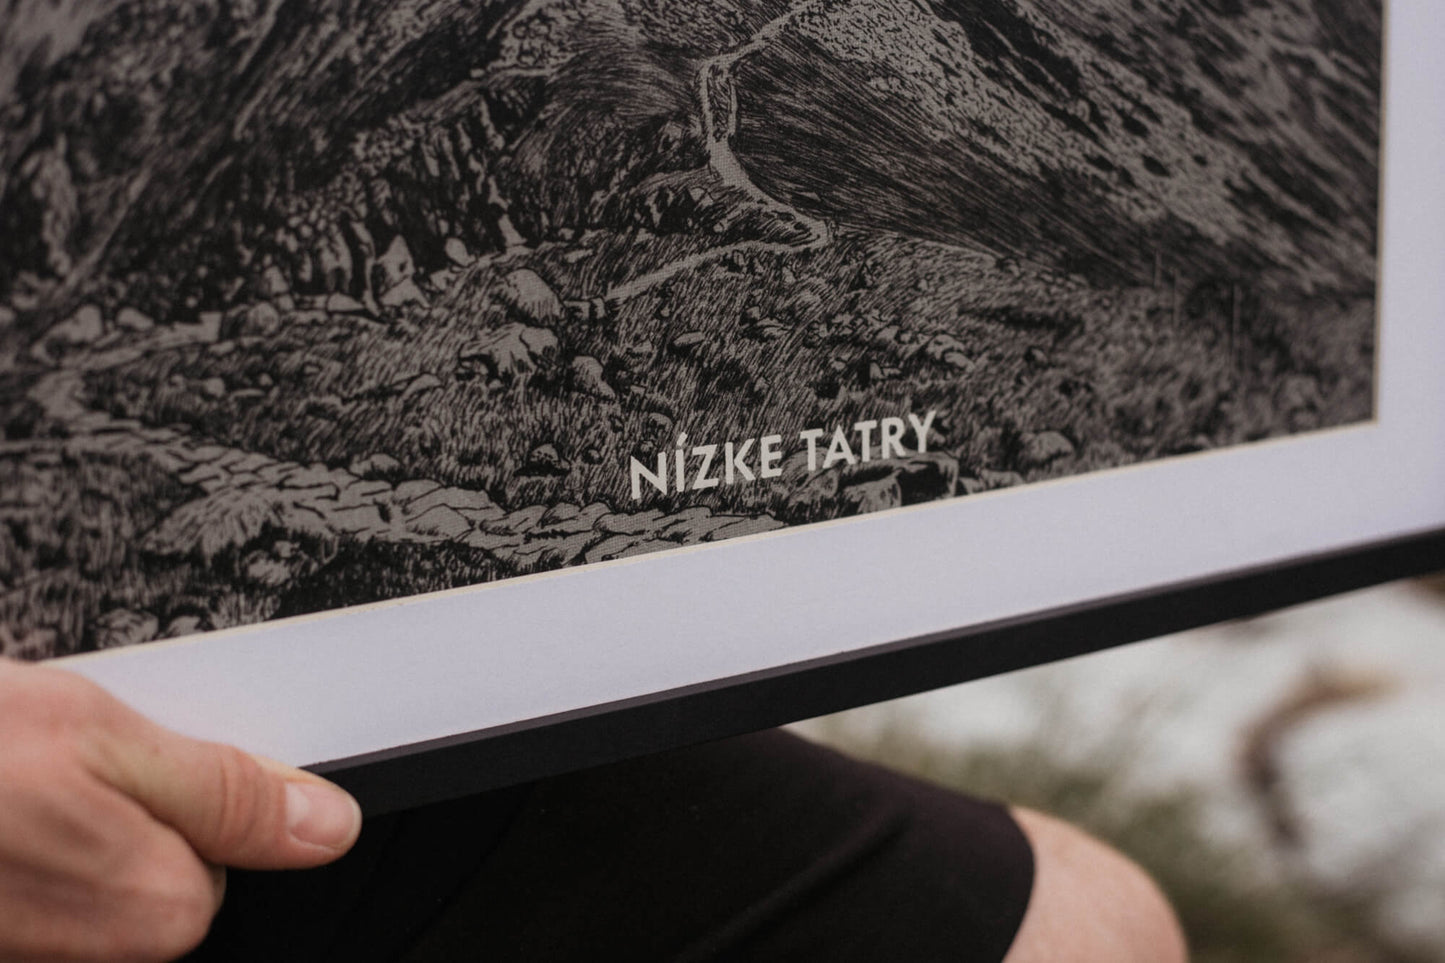 Nízke Tatry – Milan Pleva